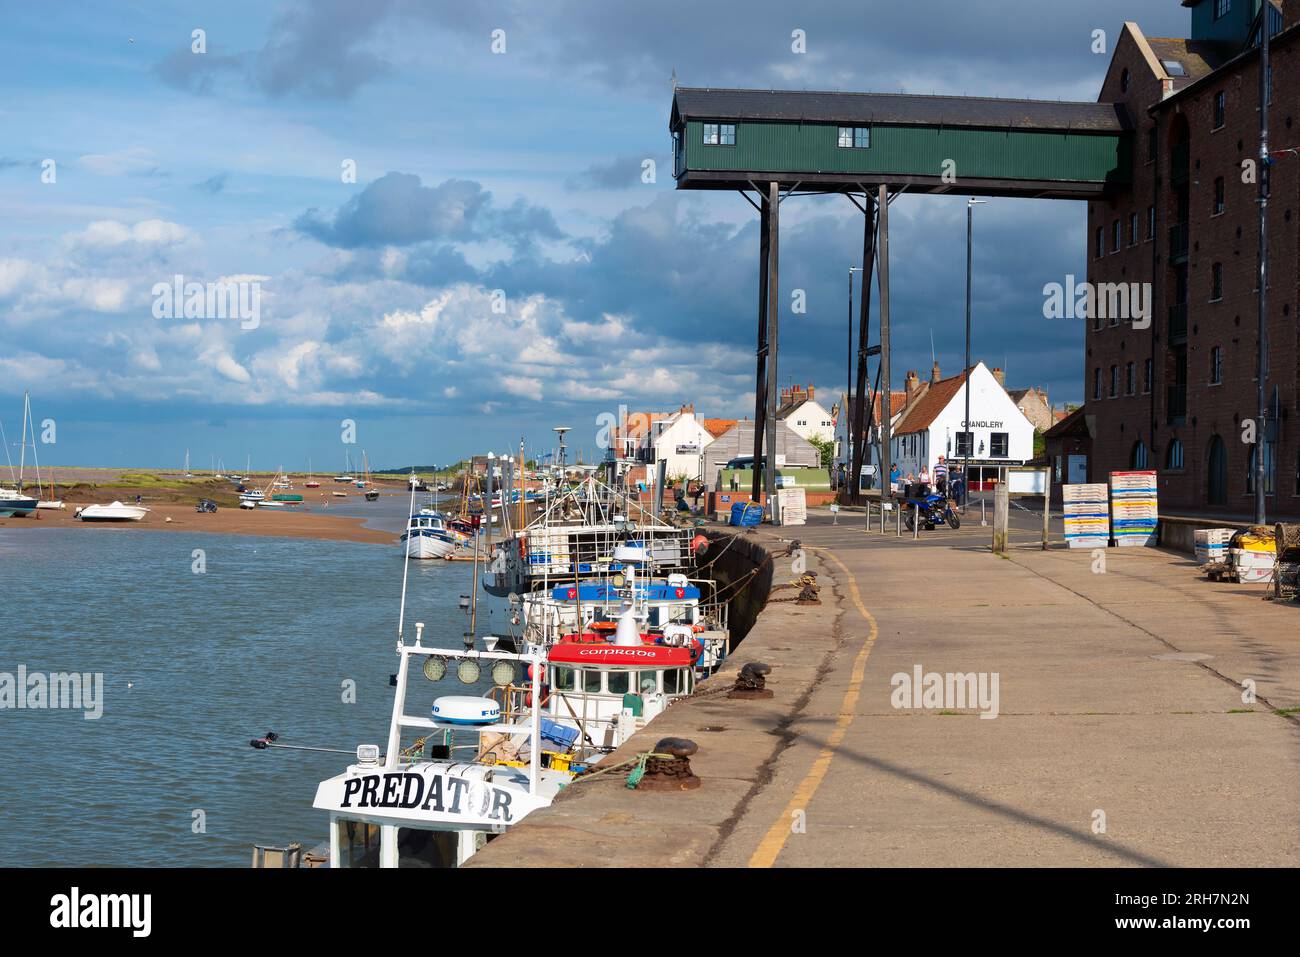 La banchina, in estate, nella città turistica del Norfolk settentrionale di Wells-Next-the-Sea con le sue barche da pesca ormeggiate lungo la bassa marea. Norfolk, Inghilterra Foto Stock